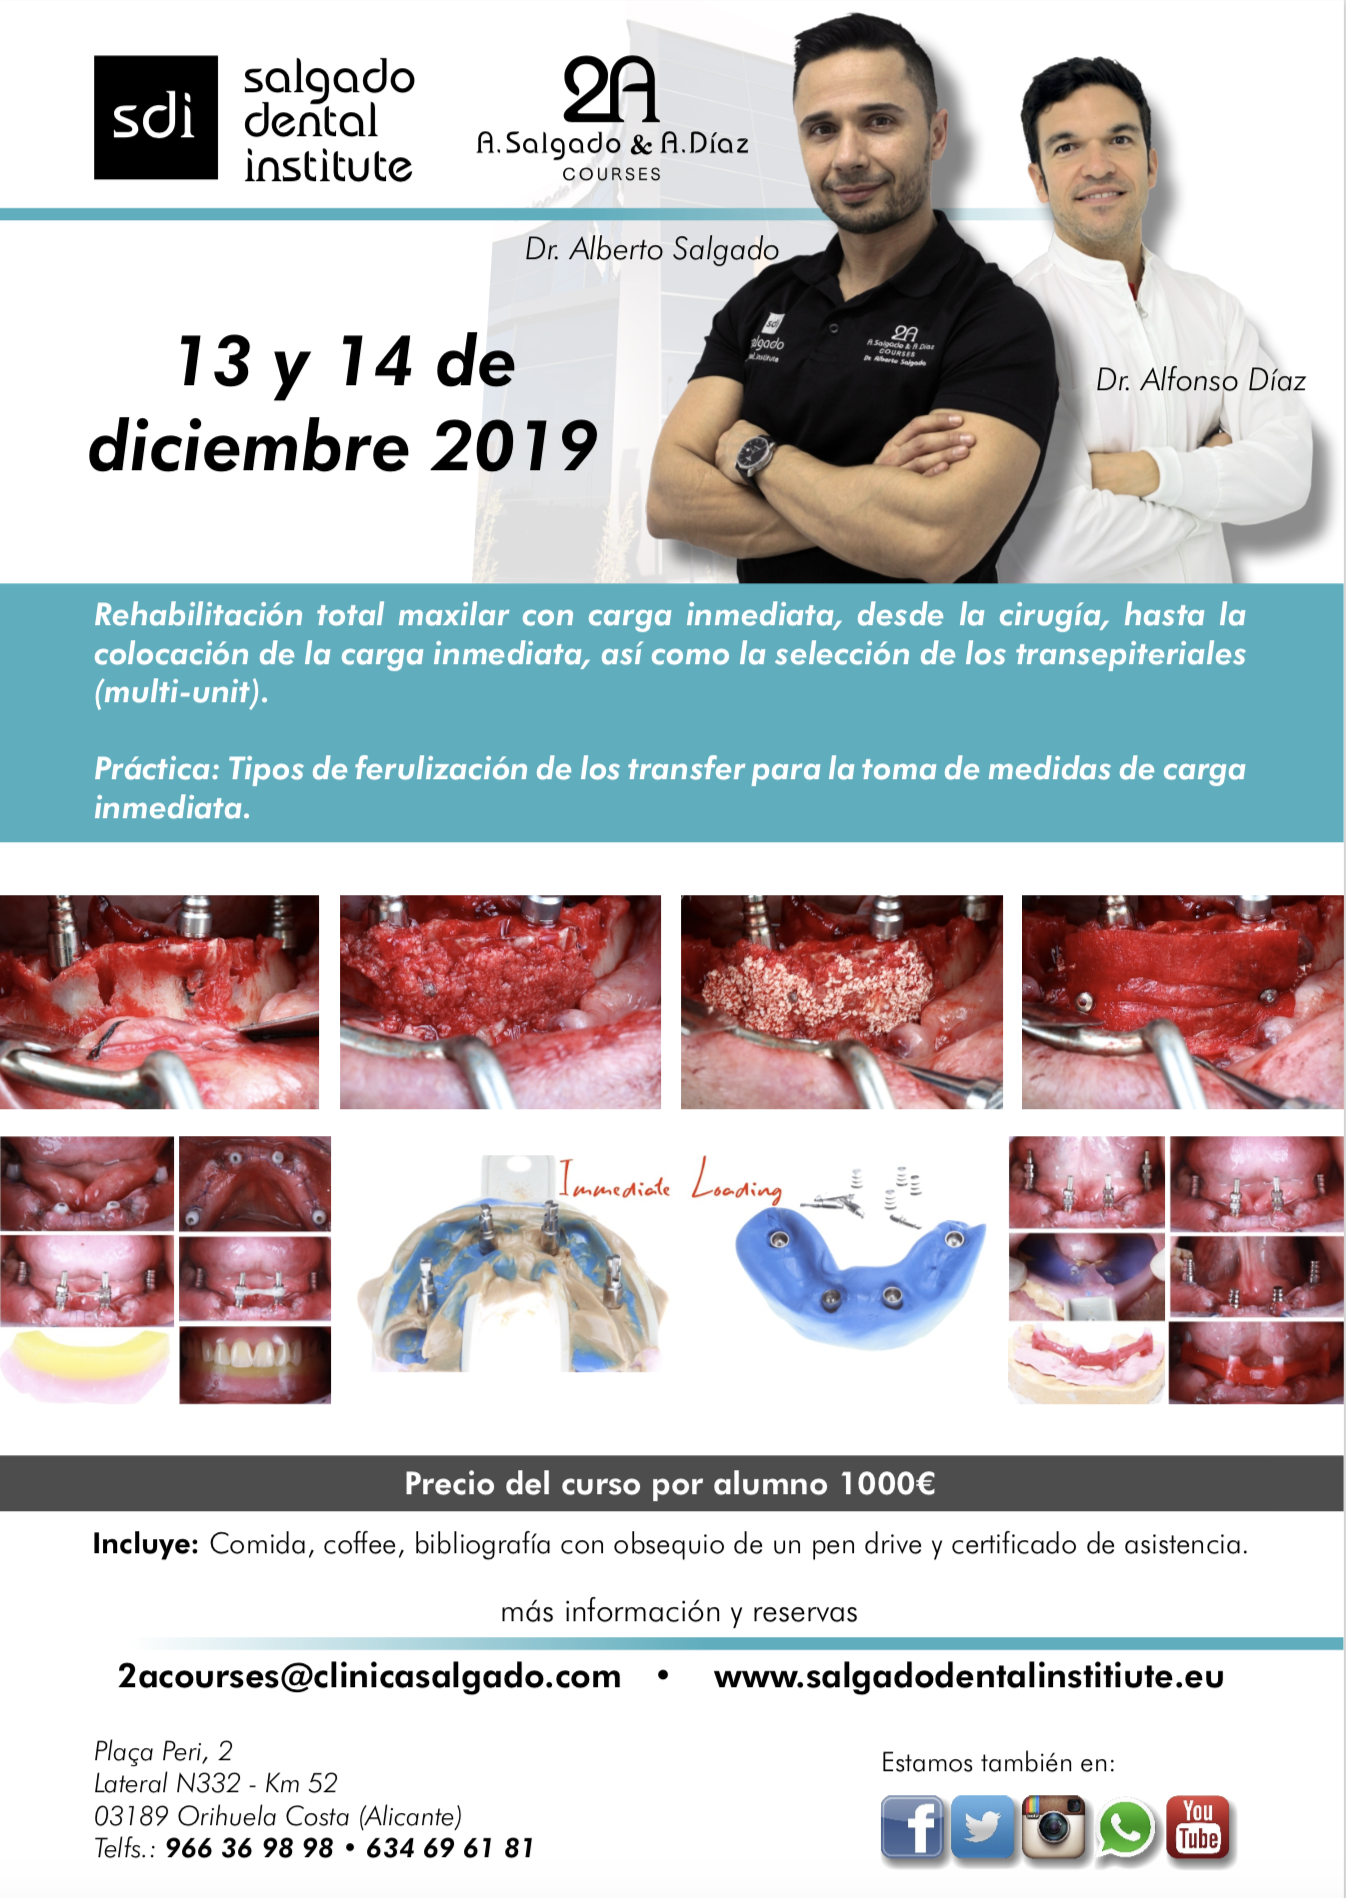 Curso Rehabilitación total maxilar con carga inmediata Drs Salgado & Díaz - SDI Salgado Dental Institute